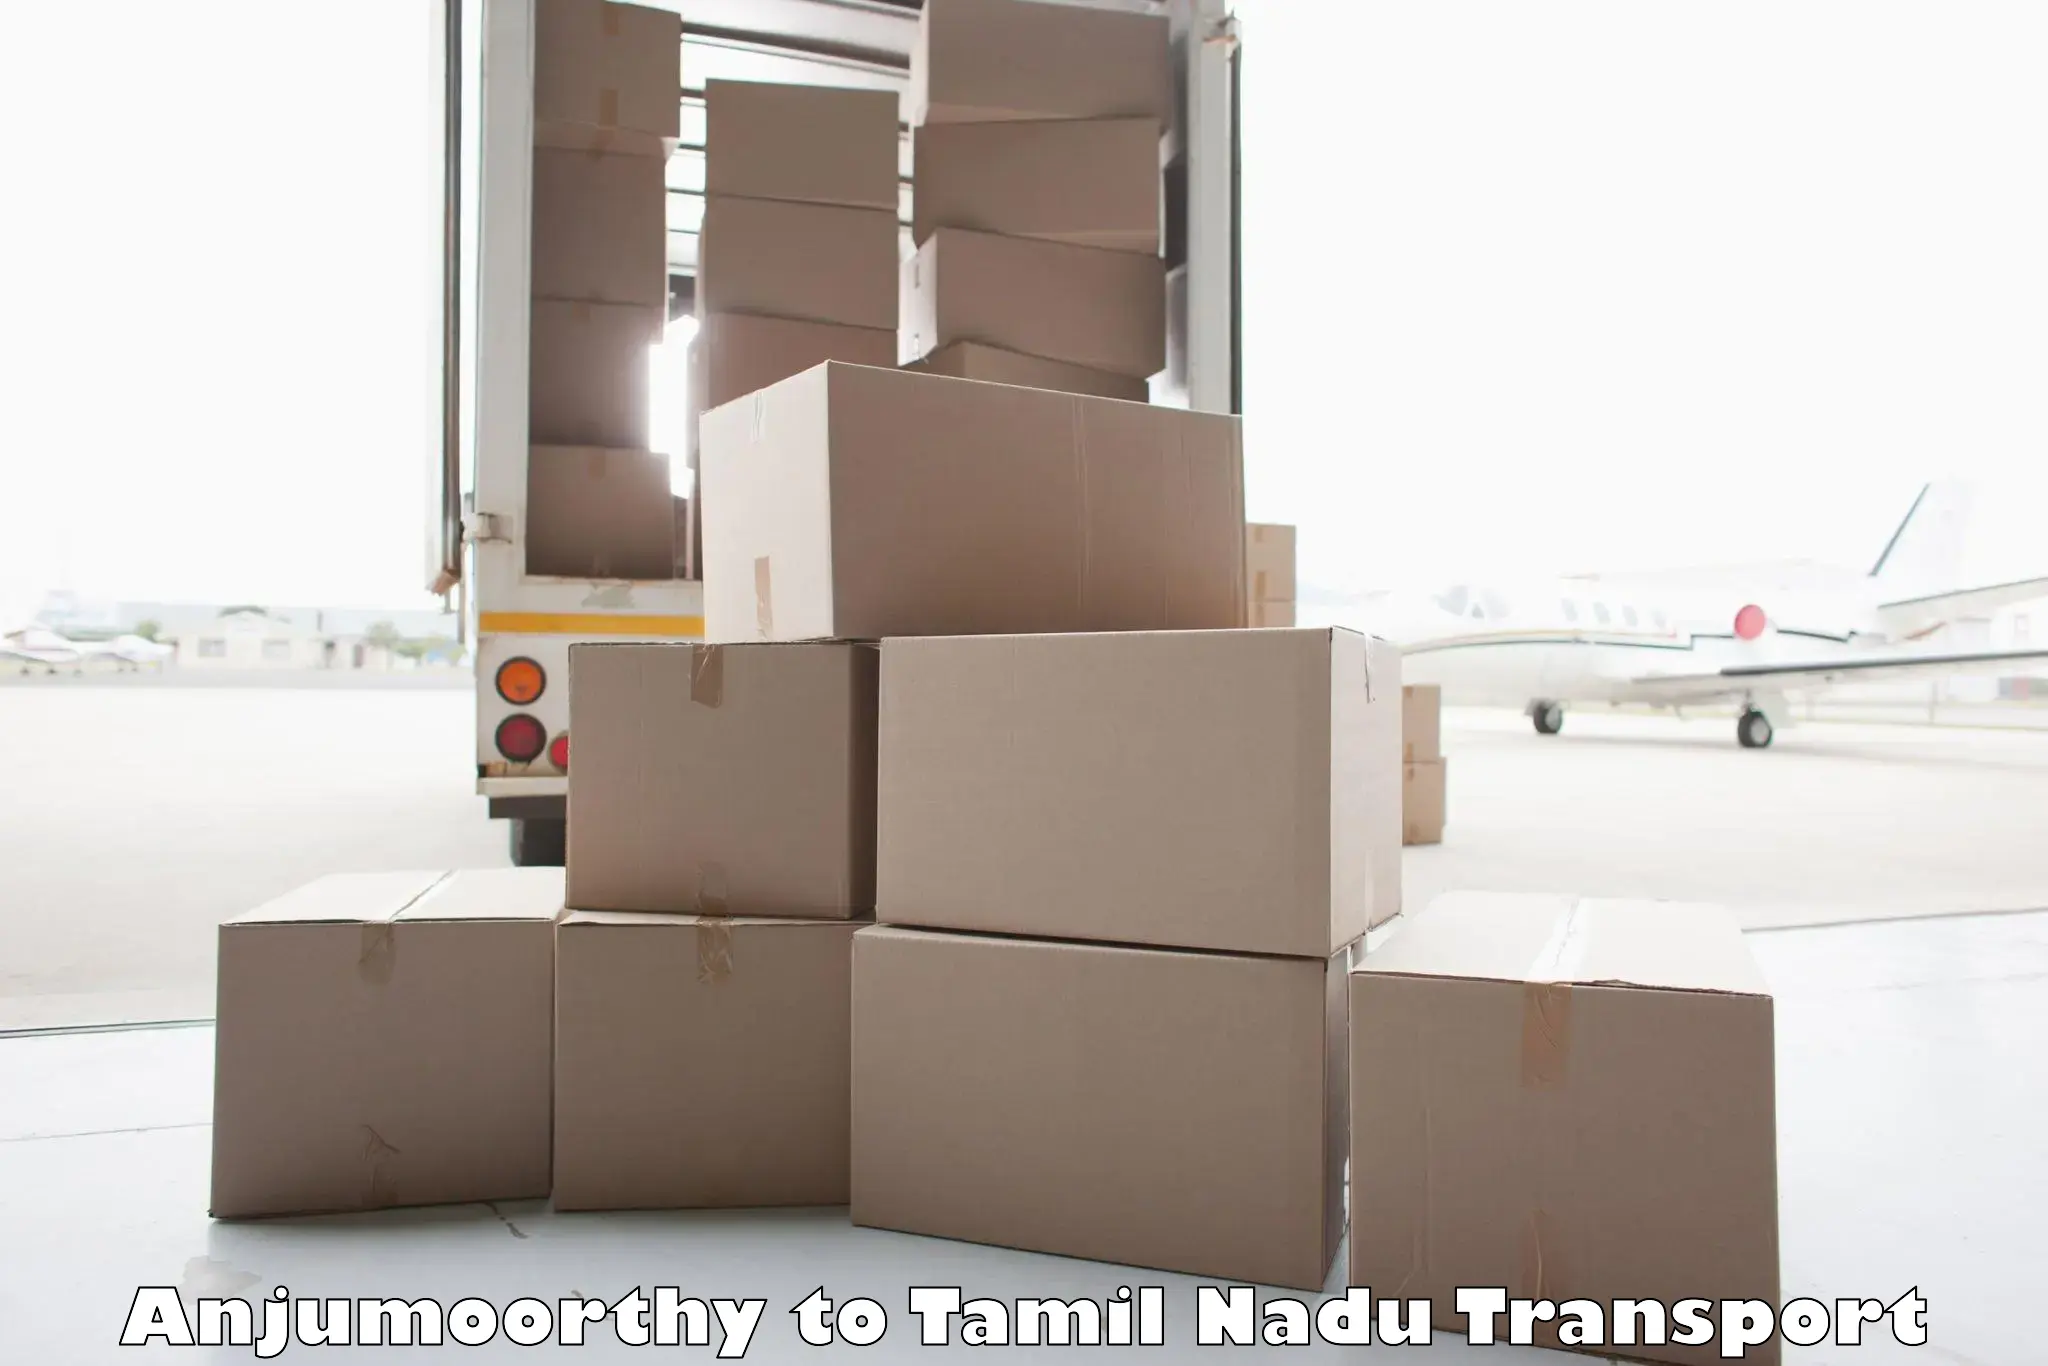 Lorry transport service Anjumoorthy to Tiruvarur